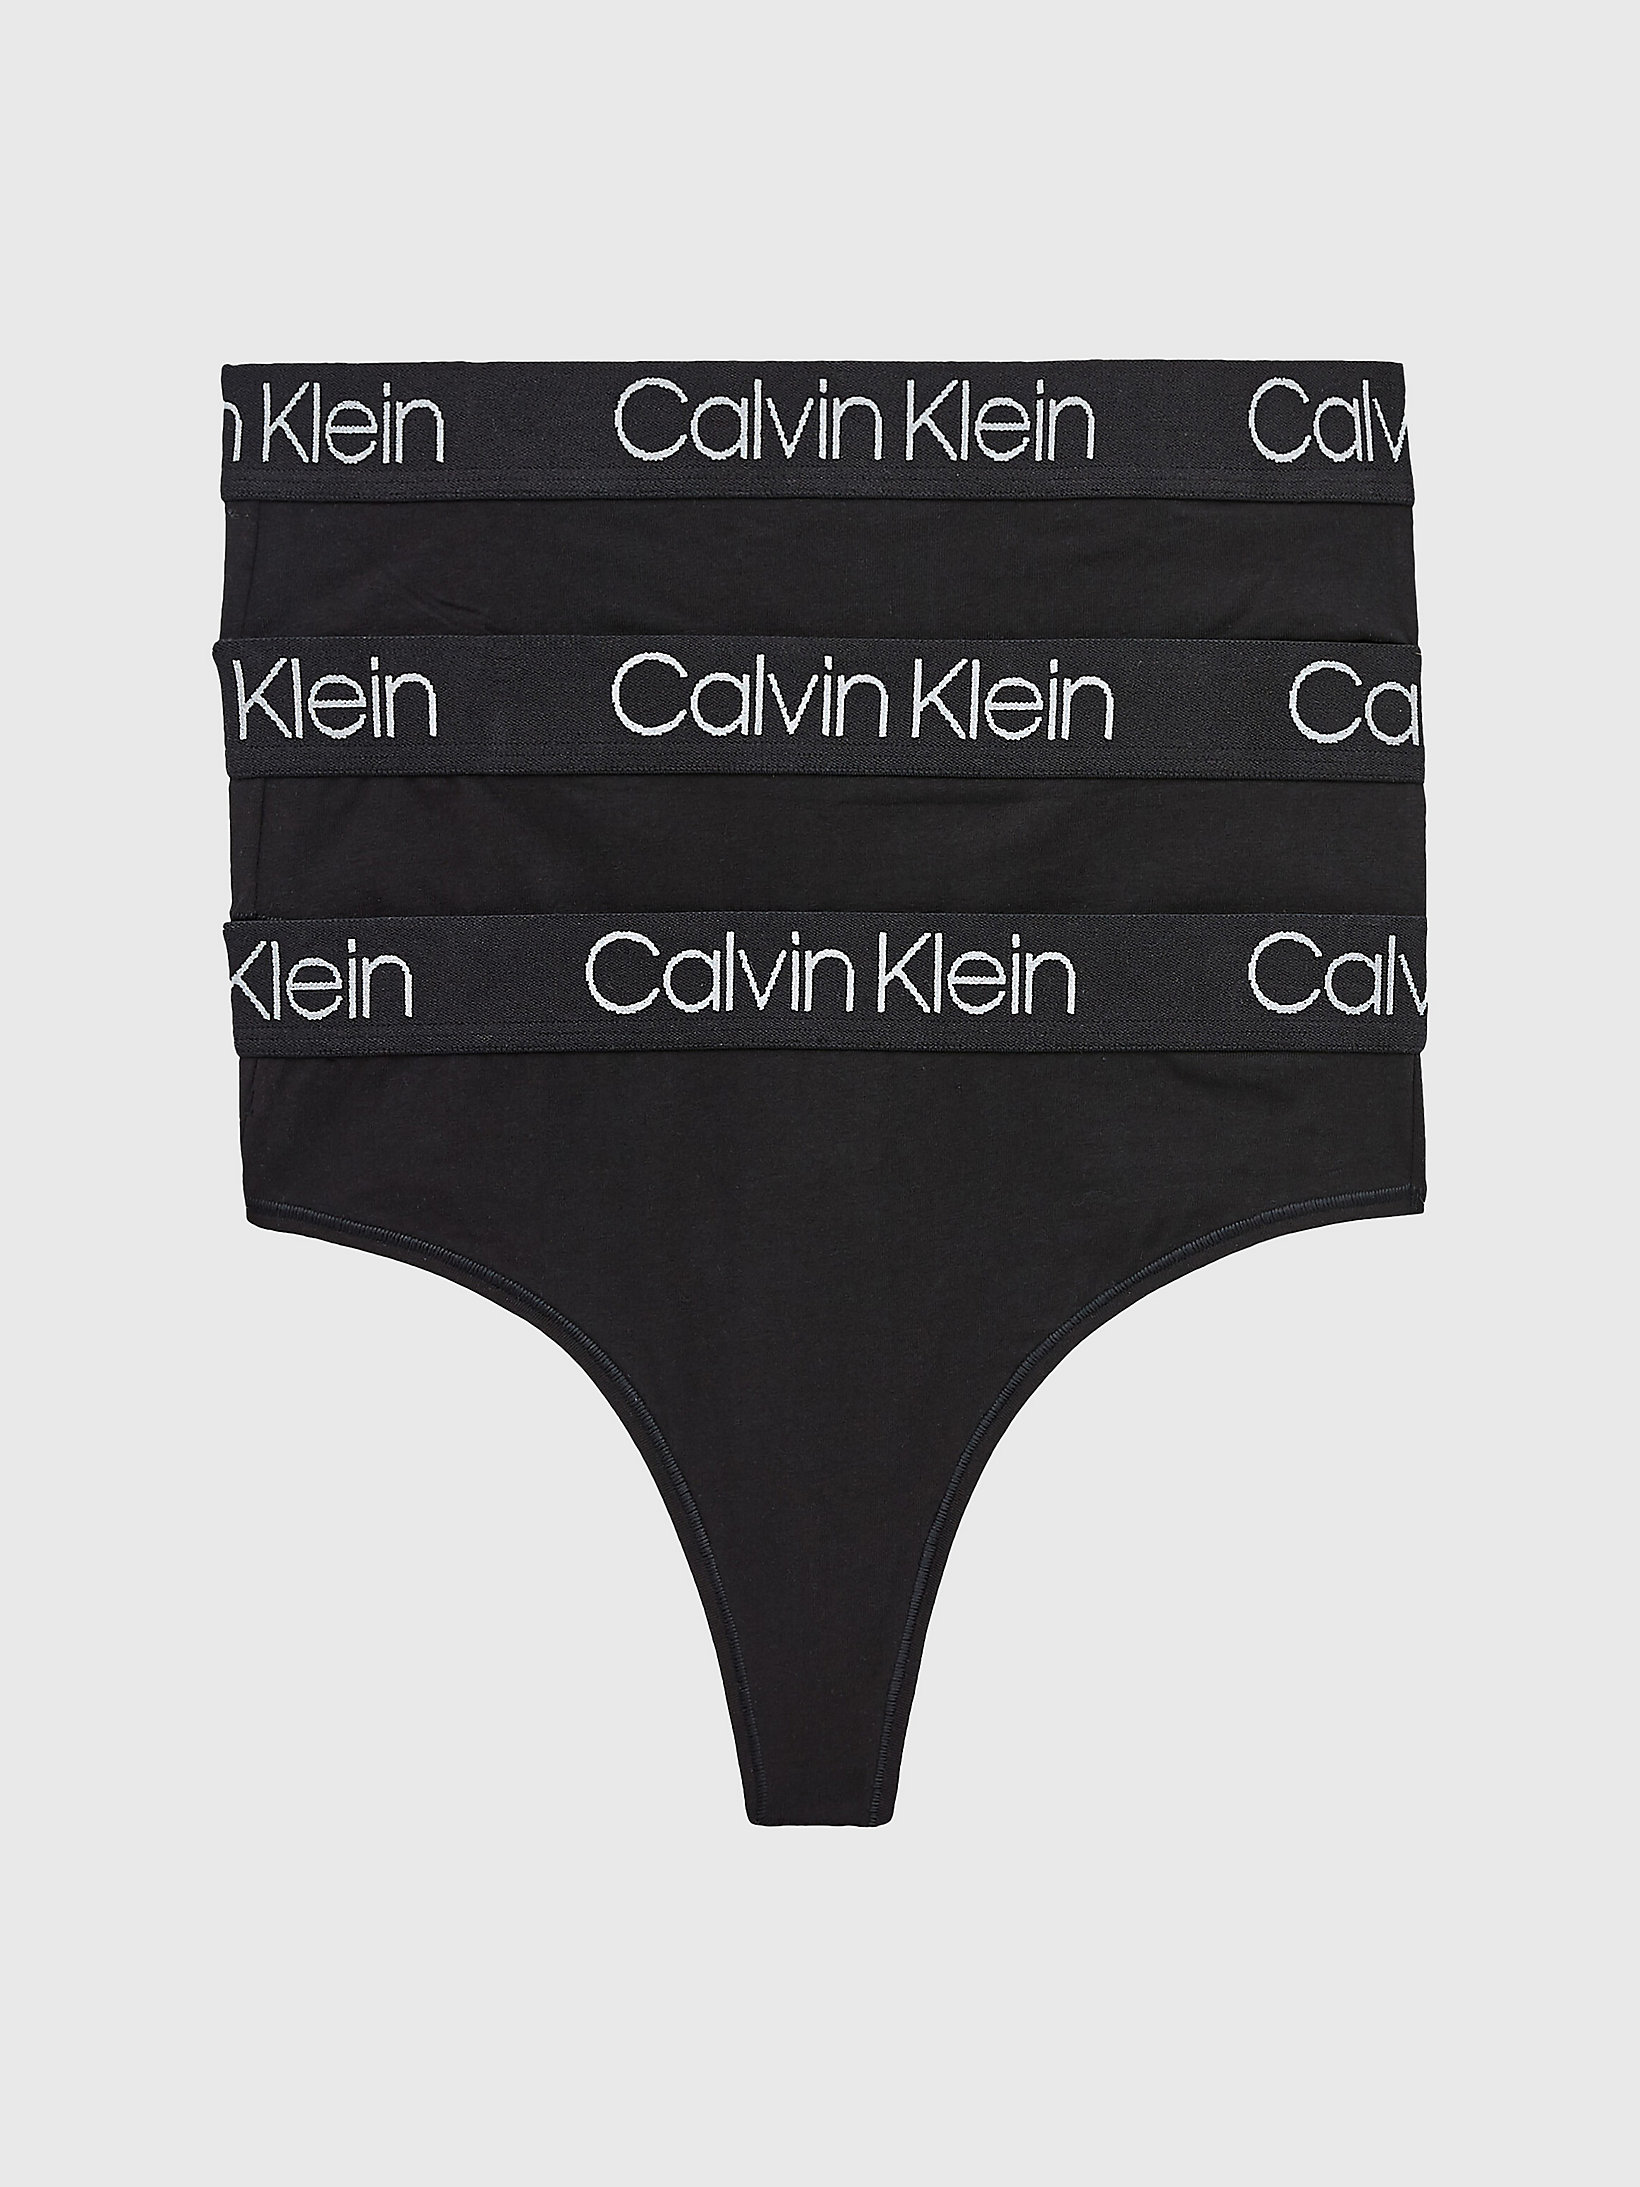 Black/black/black > Zestaw 3 Par Stringów Z Wysokim Stanem - Body > undefined Kobiety - Calvin Klein